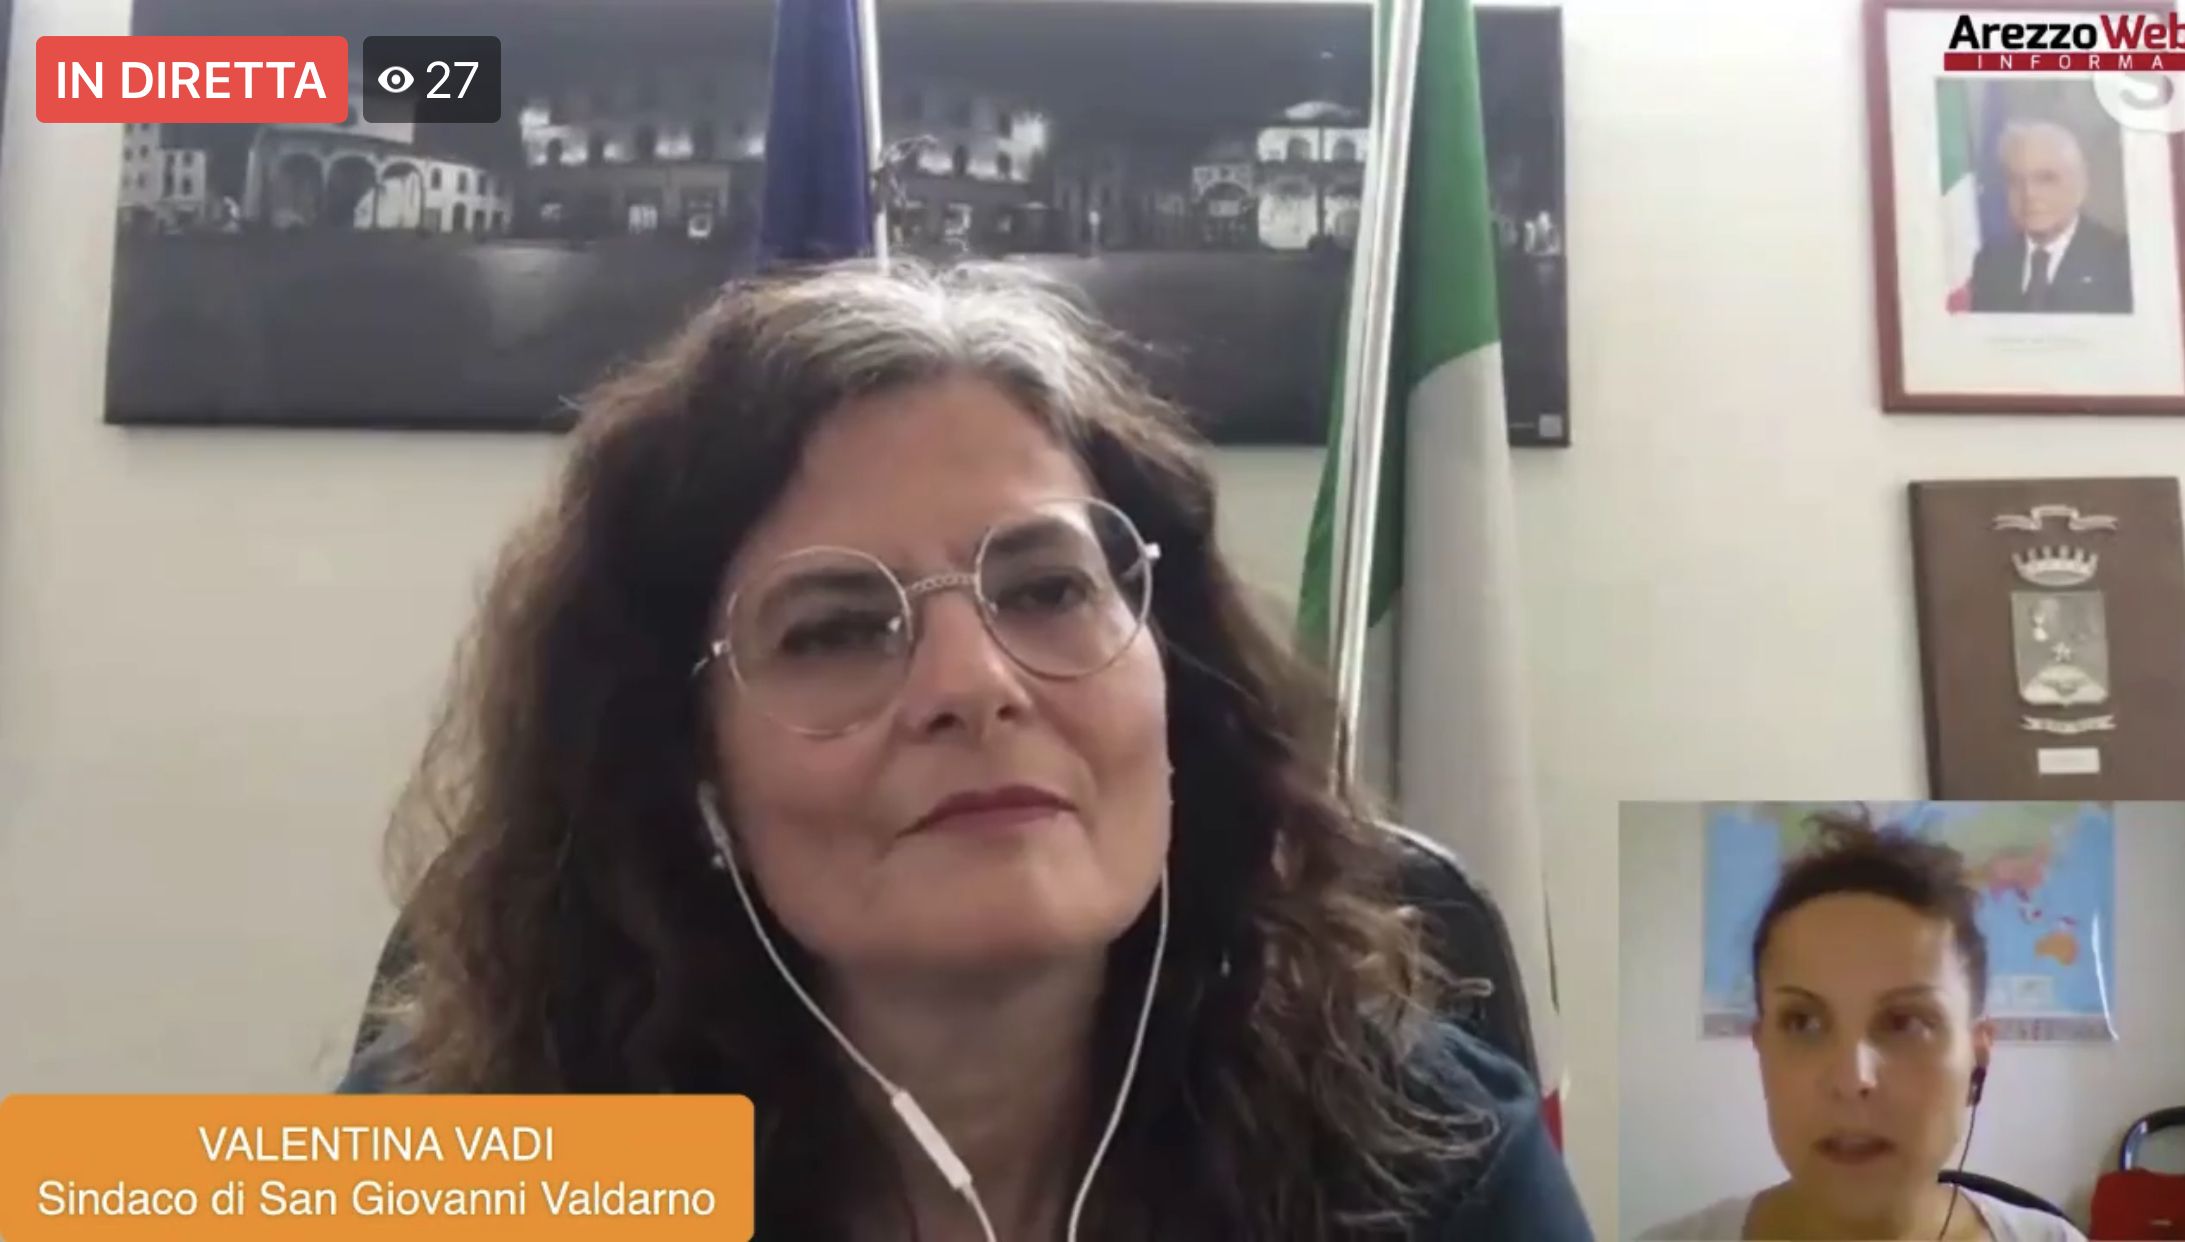 In diretta con Valentina Vadi Sindaco di San Giovanni Valdarno per parlare della fase 2